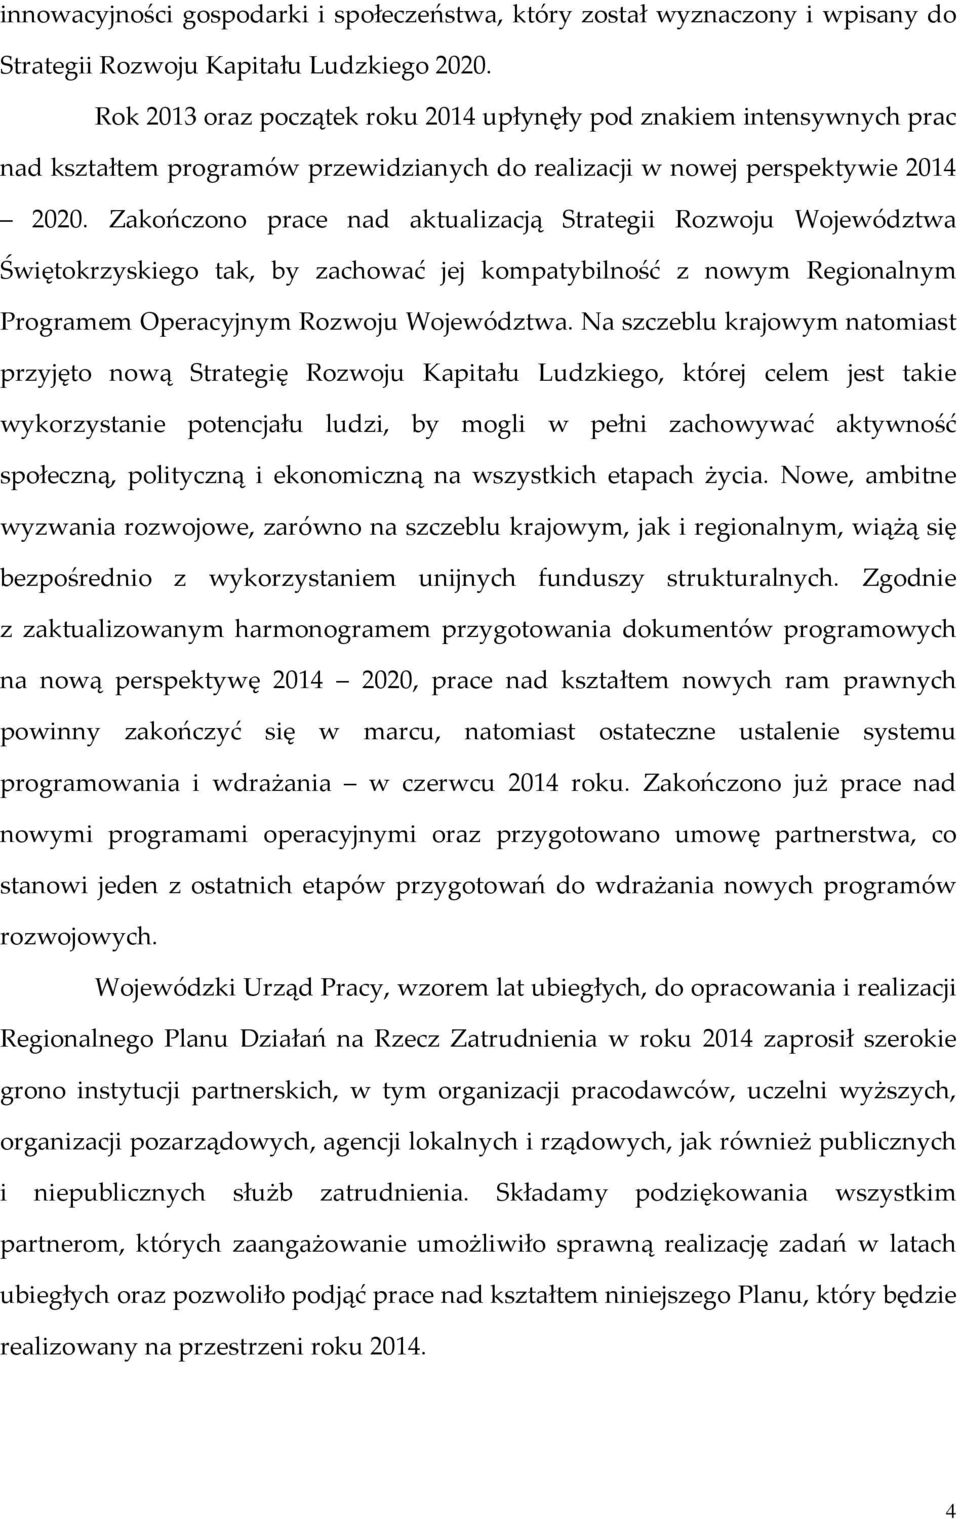 Zakończono prace nad aktualizacją Strategii Rozwoju Województwa Świętokrzyskiego tak, by zachować jej kompatybilność z nowym Regionalnym Programem Operacyjnym Rozwoju Województwa.